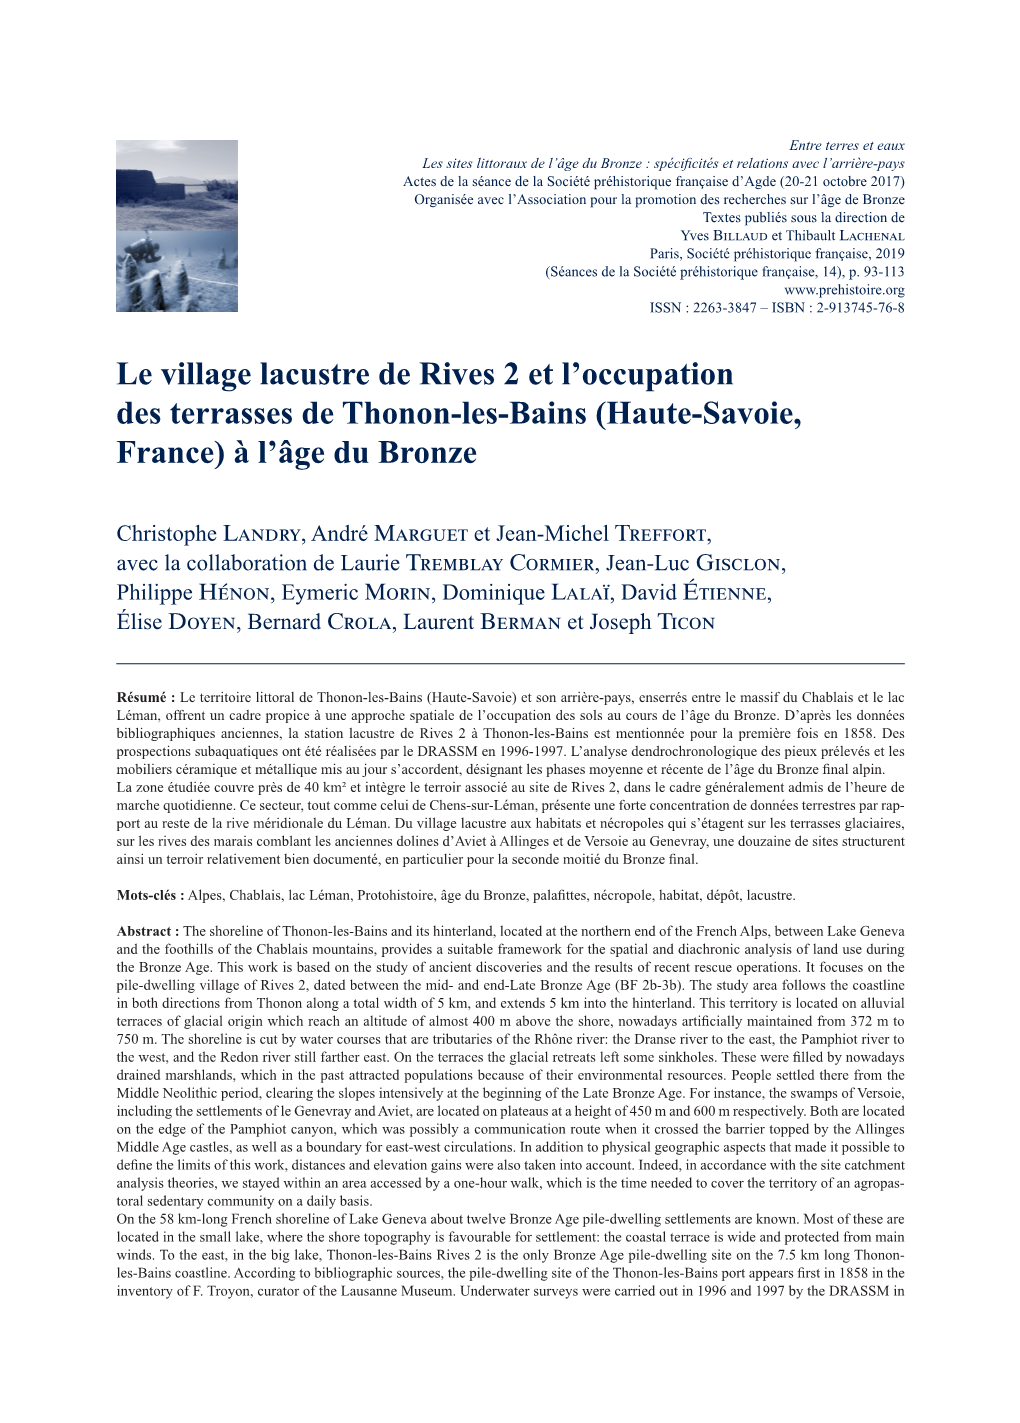 Le Village Lacustre De Rives 2 Et L'occupation Des Terrasses De